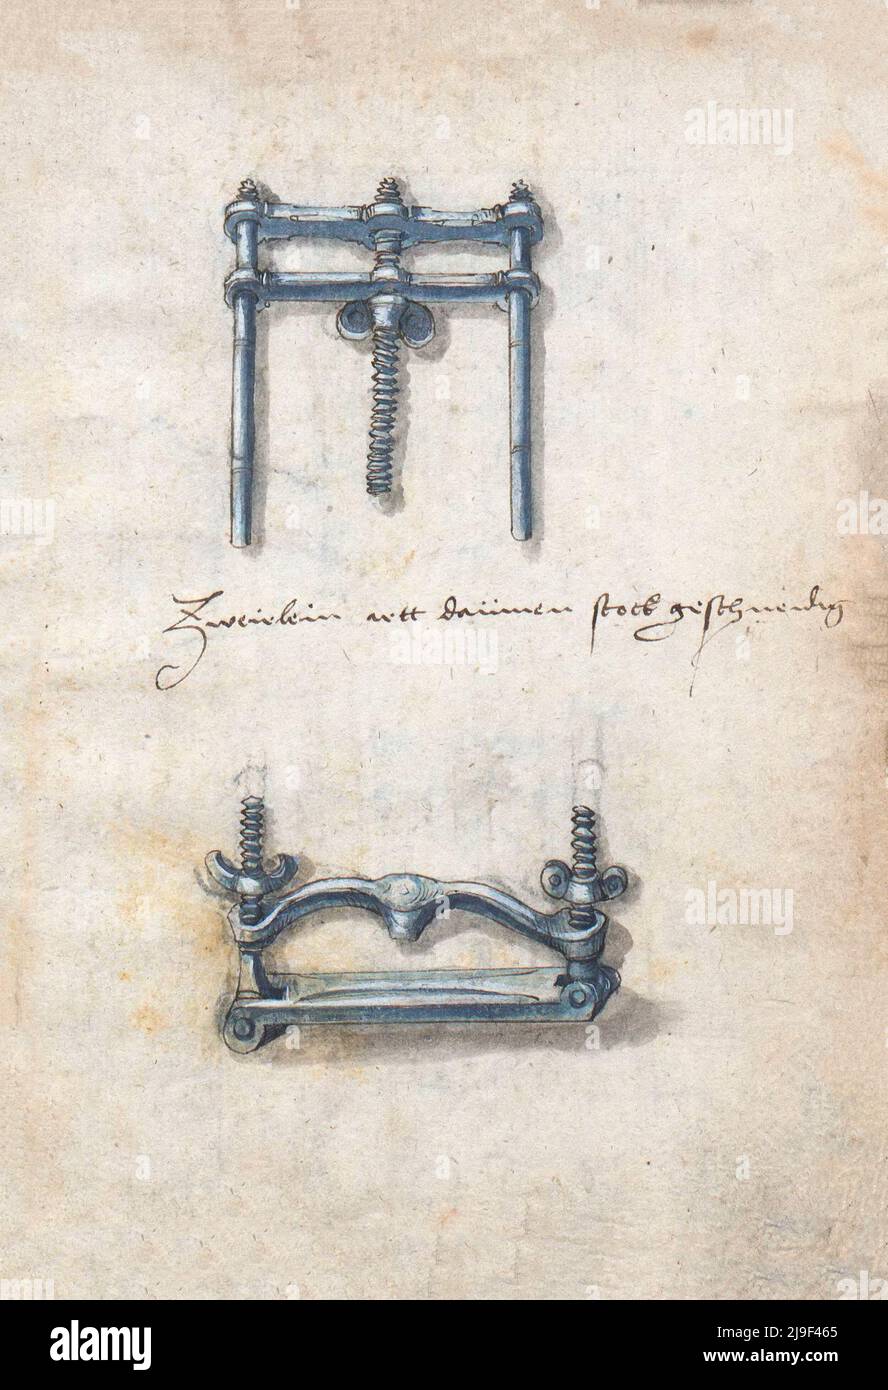 Illustrazione medievale di morsa fabbro. Gli strumenti di Martin Löffelholz (1505) Löffelholtz Codex. Illustrazioni e descrizioni di tutti i tipi di mano Foto Stock